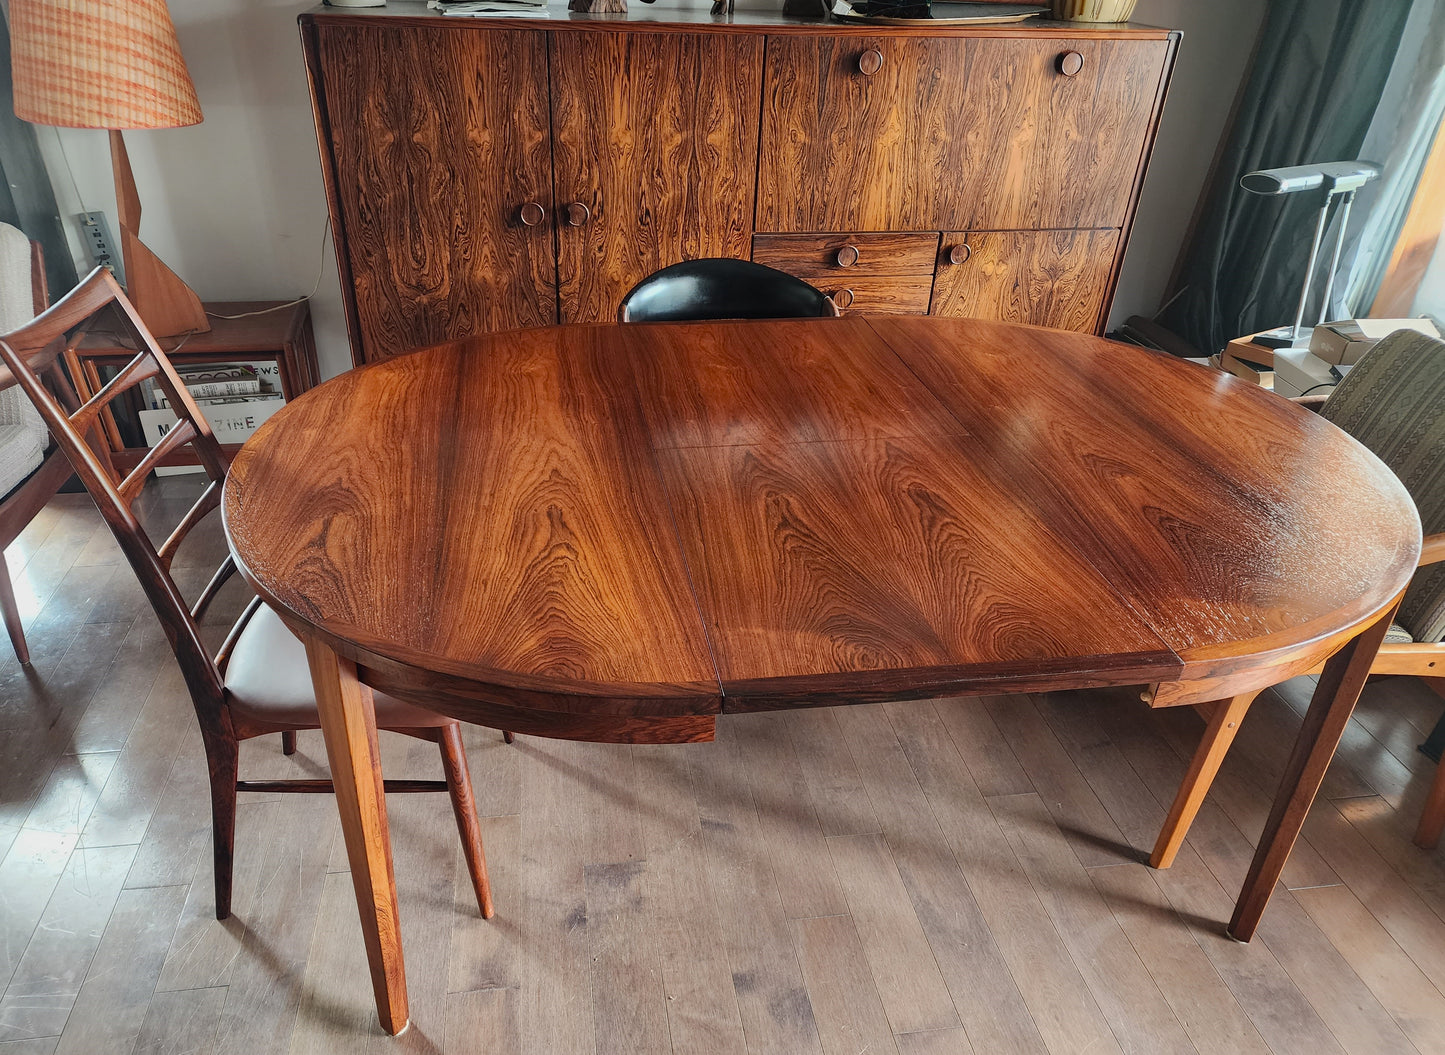 REFINISHED Danish Mid Century Modern Rosewood Table Round w 1 Leaf by H.Rosengren Hansen 47"- 67"